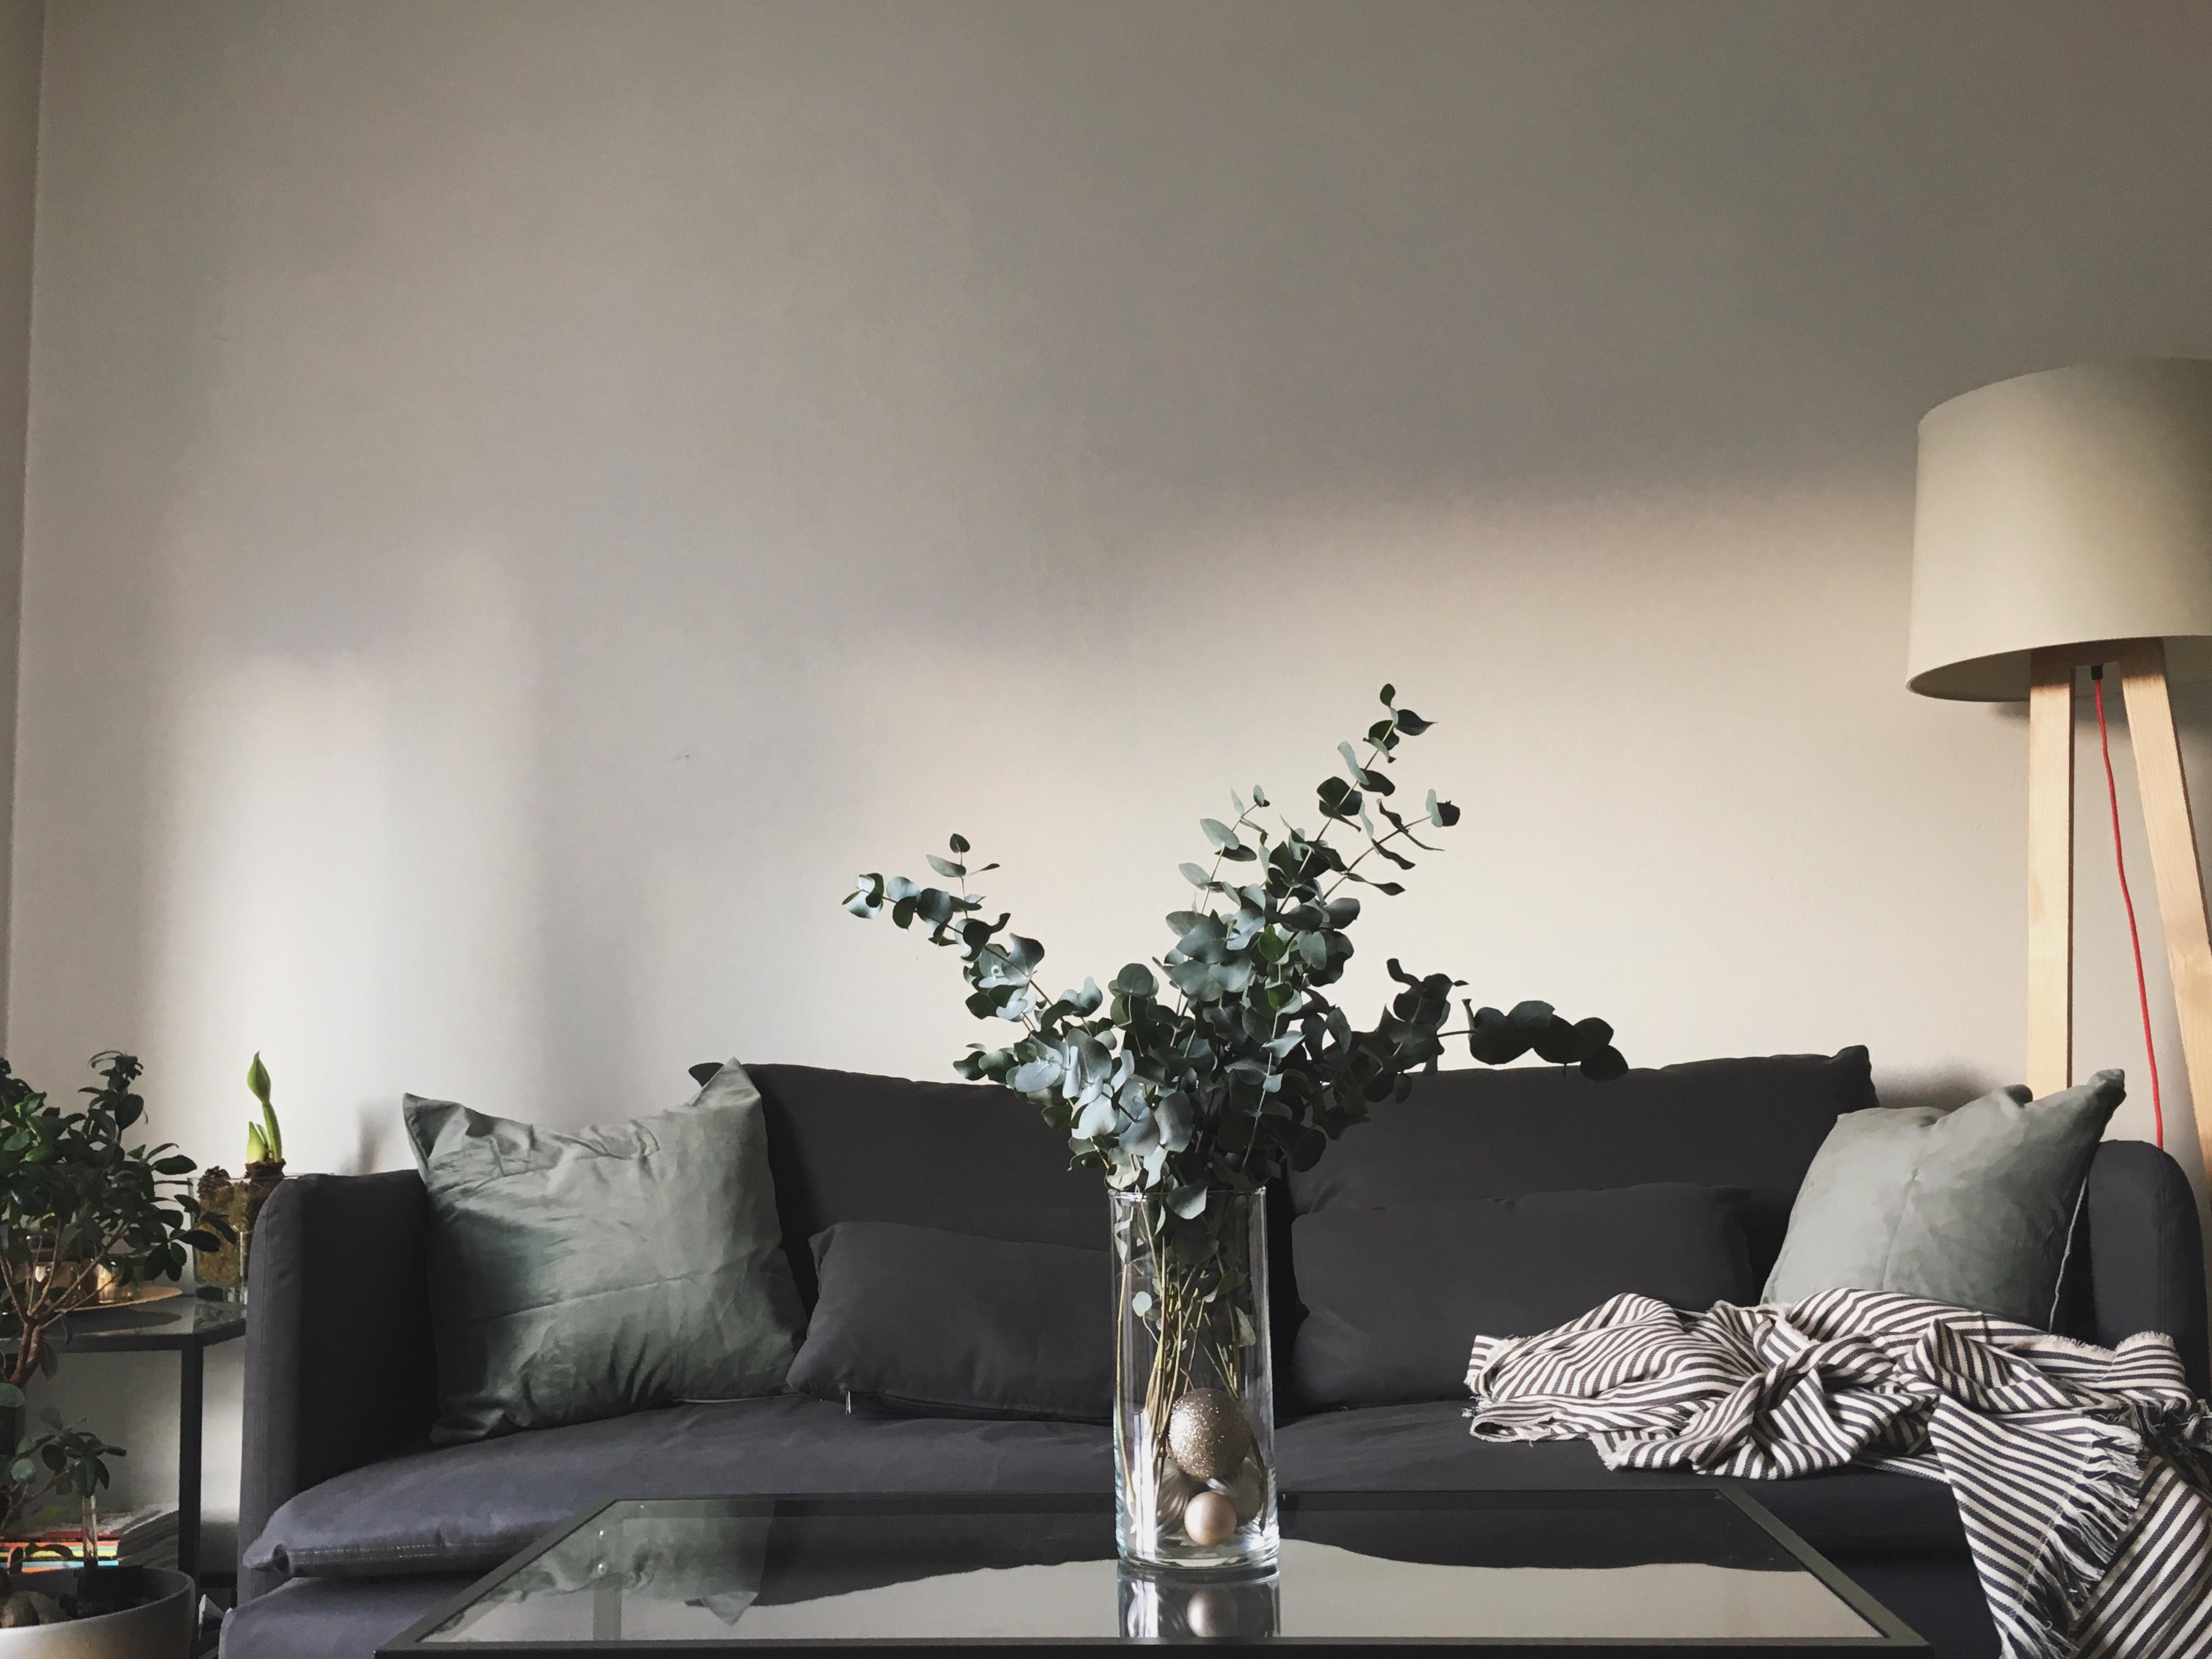 Kuschelort für kalte Winterabende #sofa #cozy #couch #couchstyle #interior #inspo